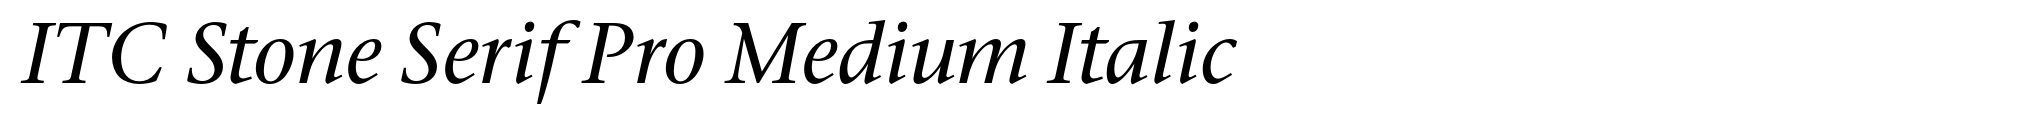 ITC Stone Serif Pro Medium Italic image